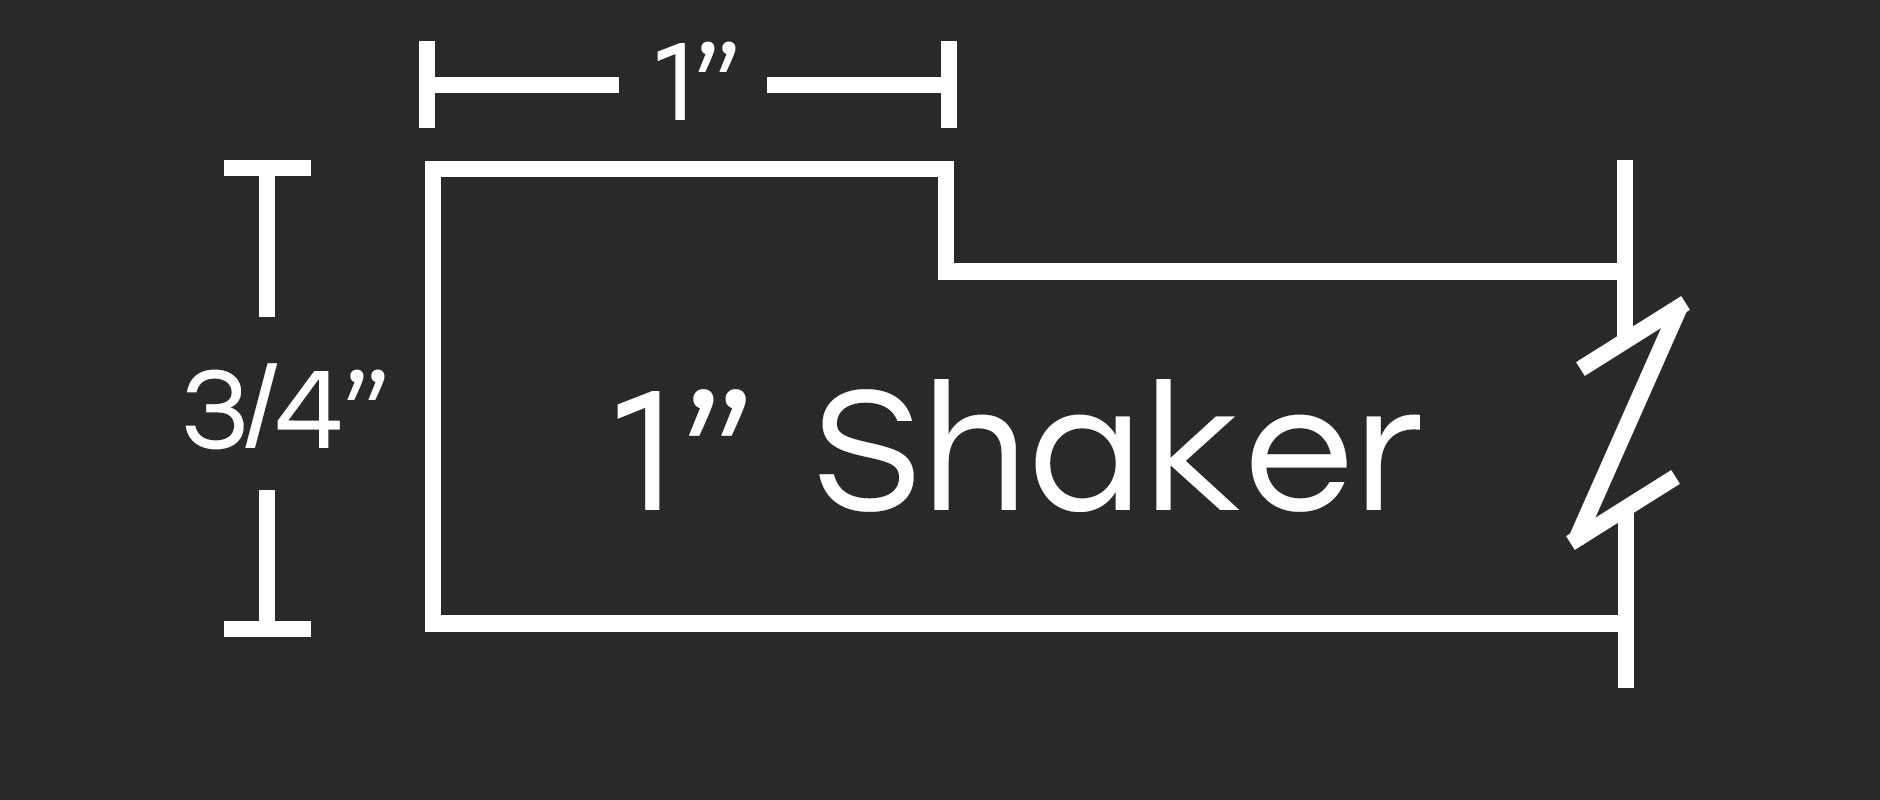 4S 101 1" Shaker profile - better than skinny shaker